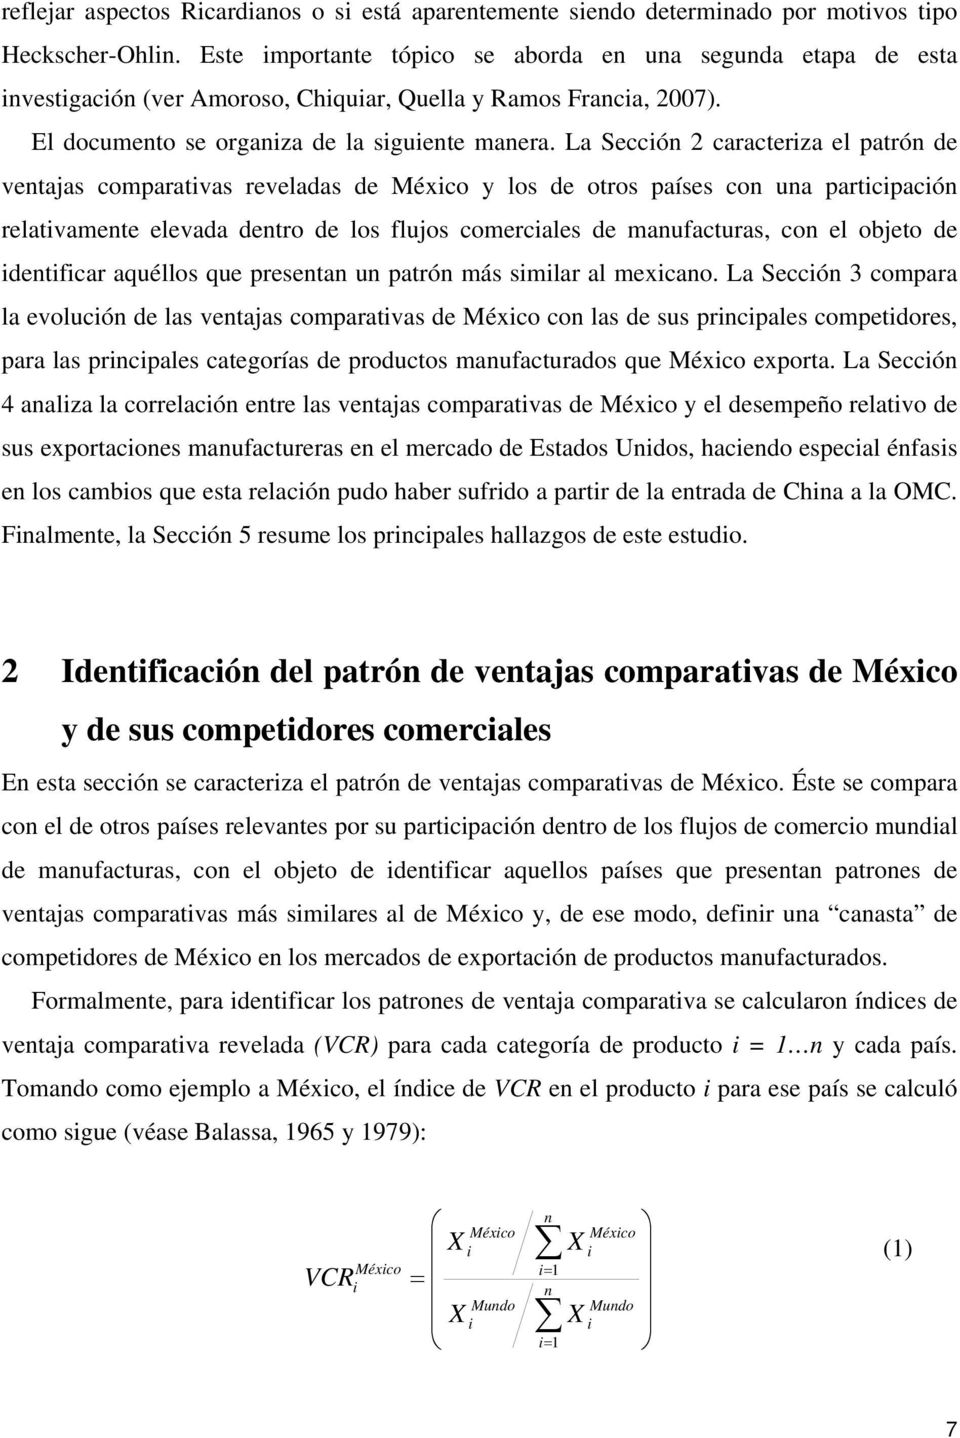 La Seccón 2 caracterza el patrón de ventajas comparatvas reveladas de Méxco y los de otros países con una partcpacón relatvamente elevada dentro de los flujos comercales de manufacturas, con el